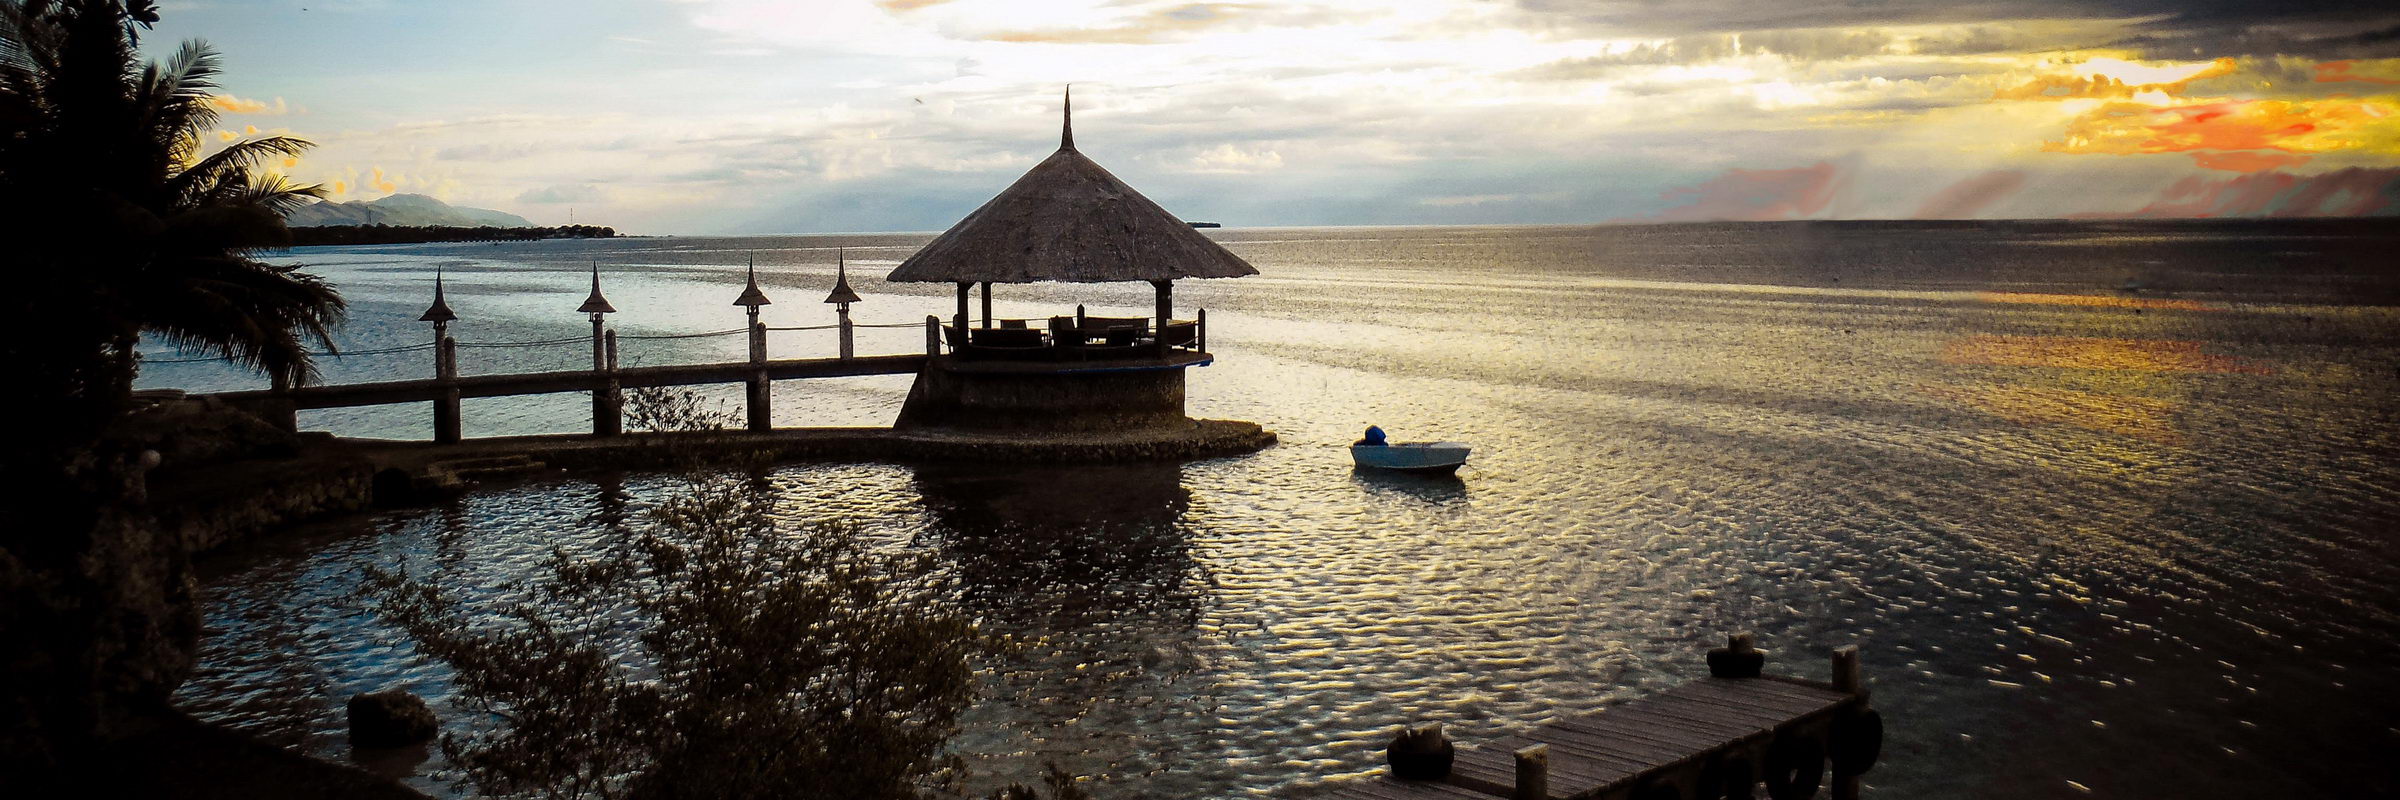 Das Dolphin House Resort auf Insel Cebu bietet eine malerische Kulisse für einen Sonnenuntergang.